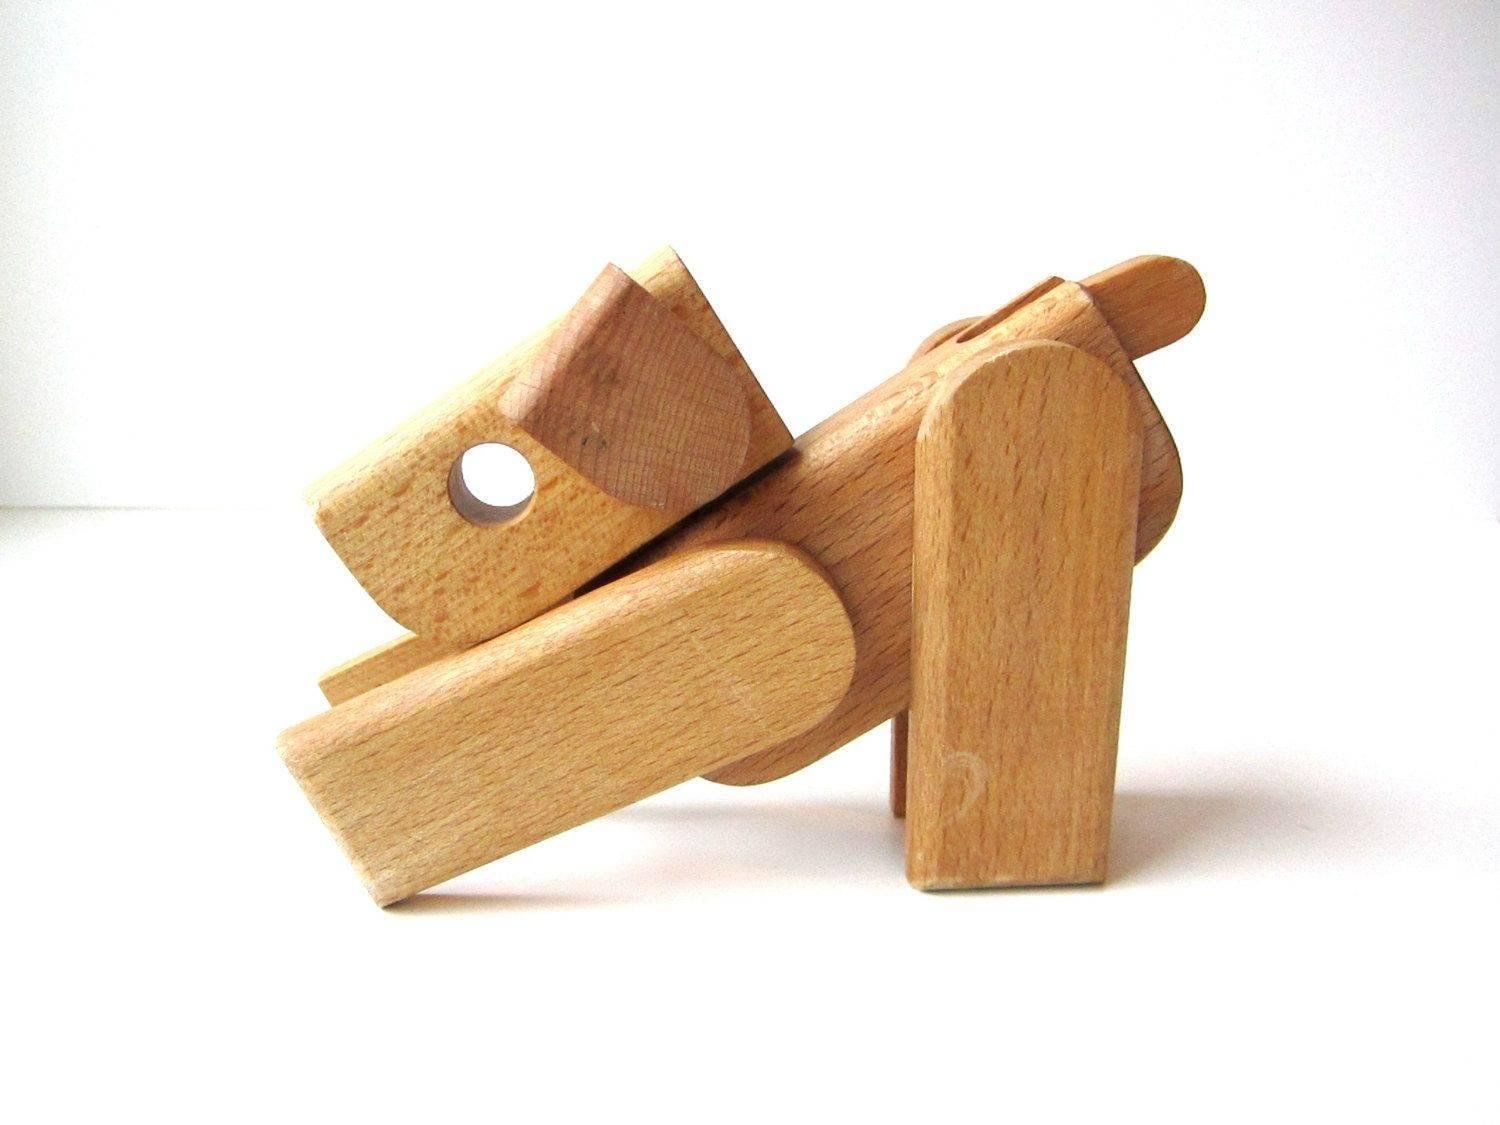 Wooden craft. Деревянные игрушки. Деревянные игрушки для детей. Деревянные изделия для детей. Мелкие изделия из дерева.